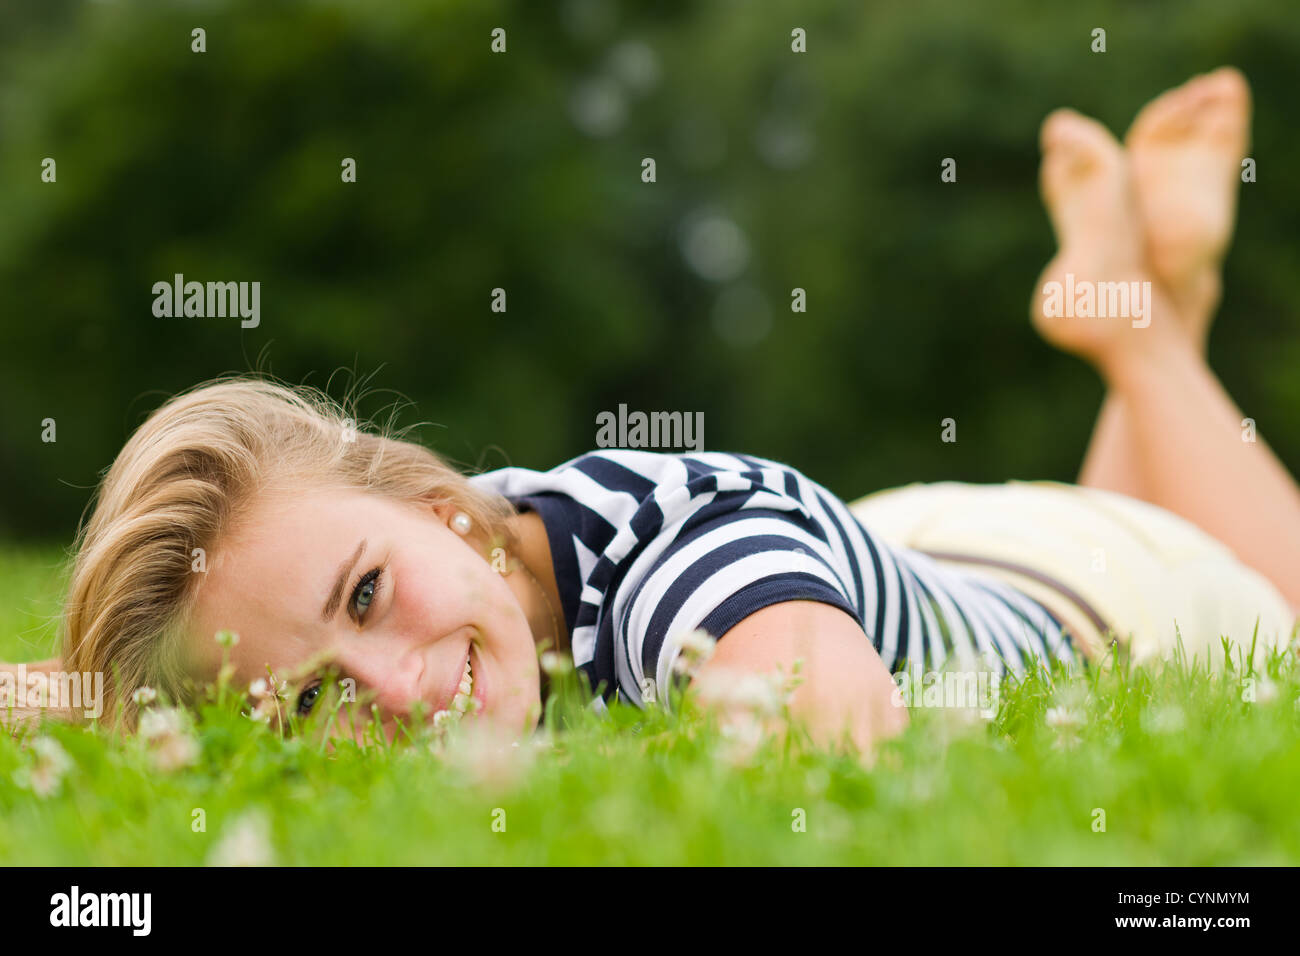 Lächelnde Mädchen auf dem Rasen liegend mit sehr engen Schärfentiefe und Fokus auf die Augen Stockfoto